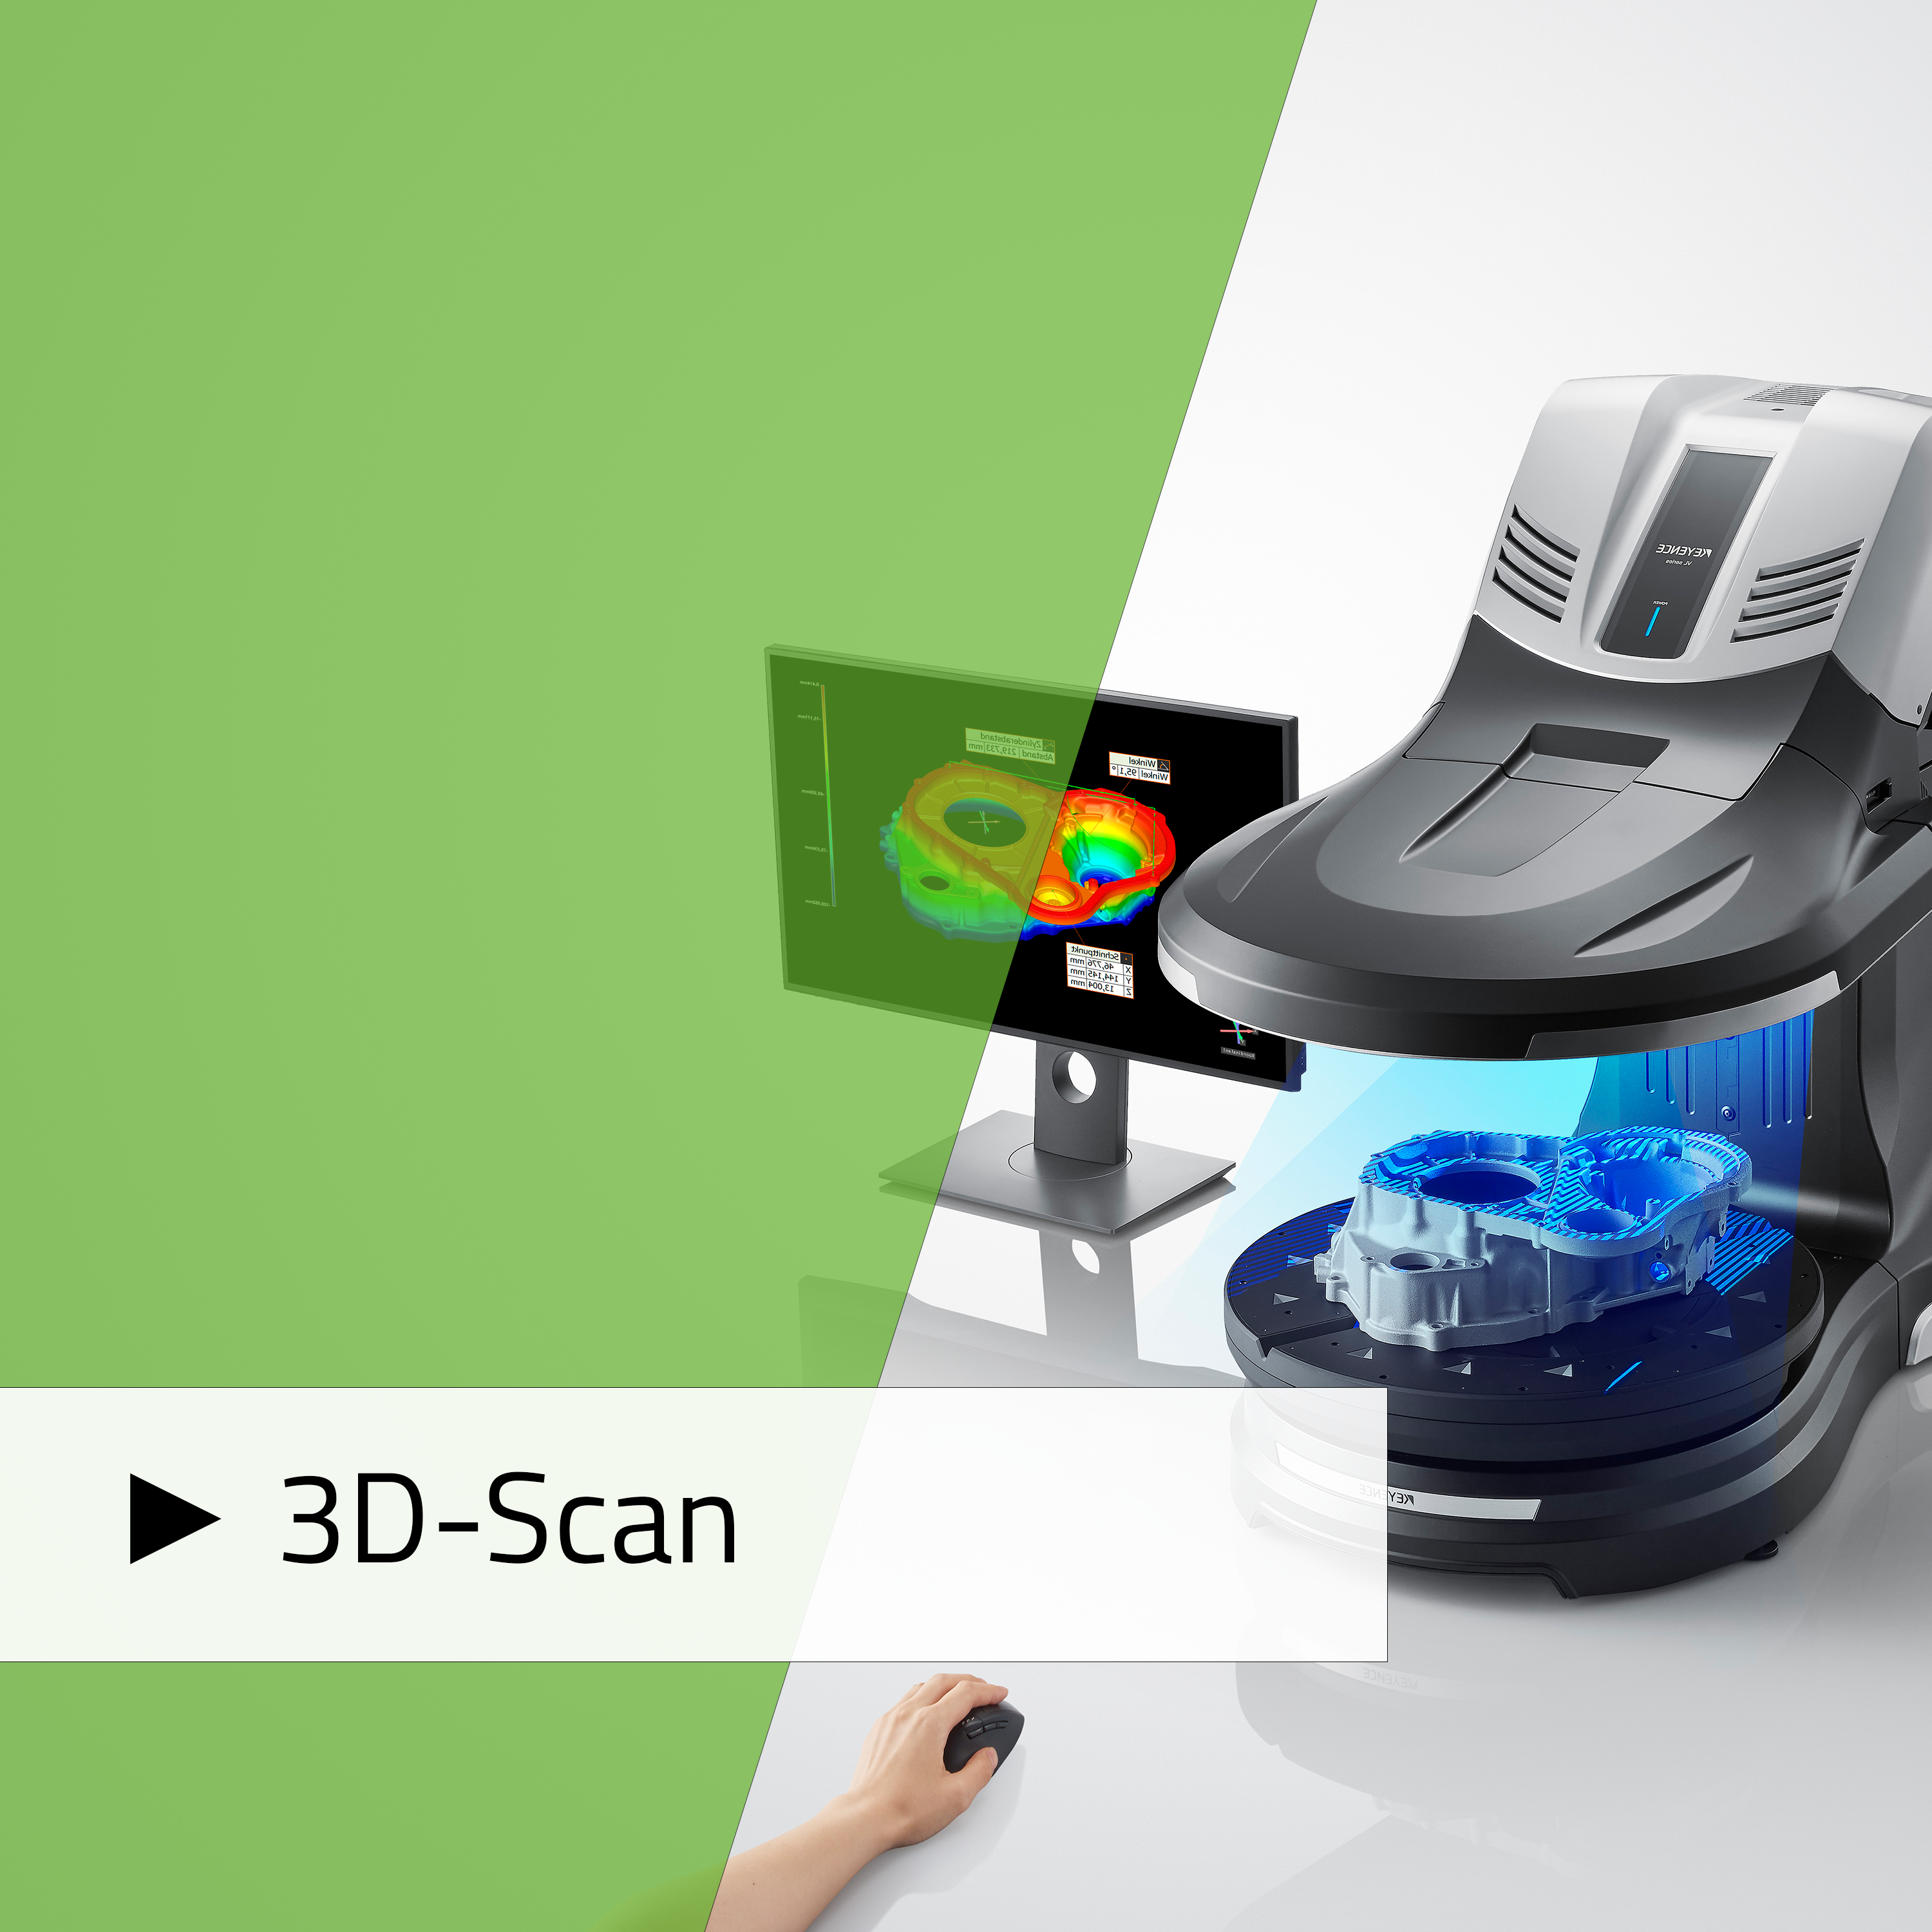 3D-Scanner